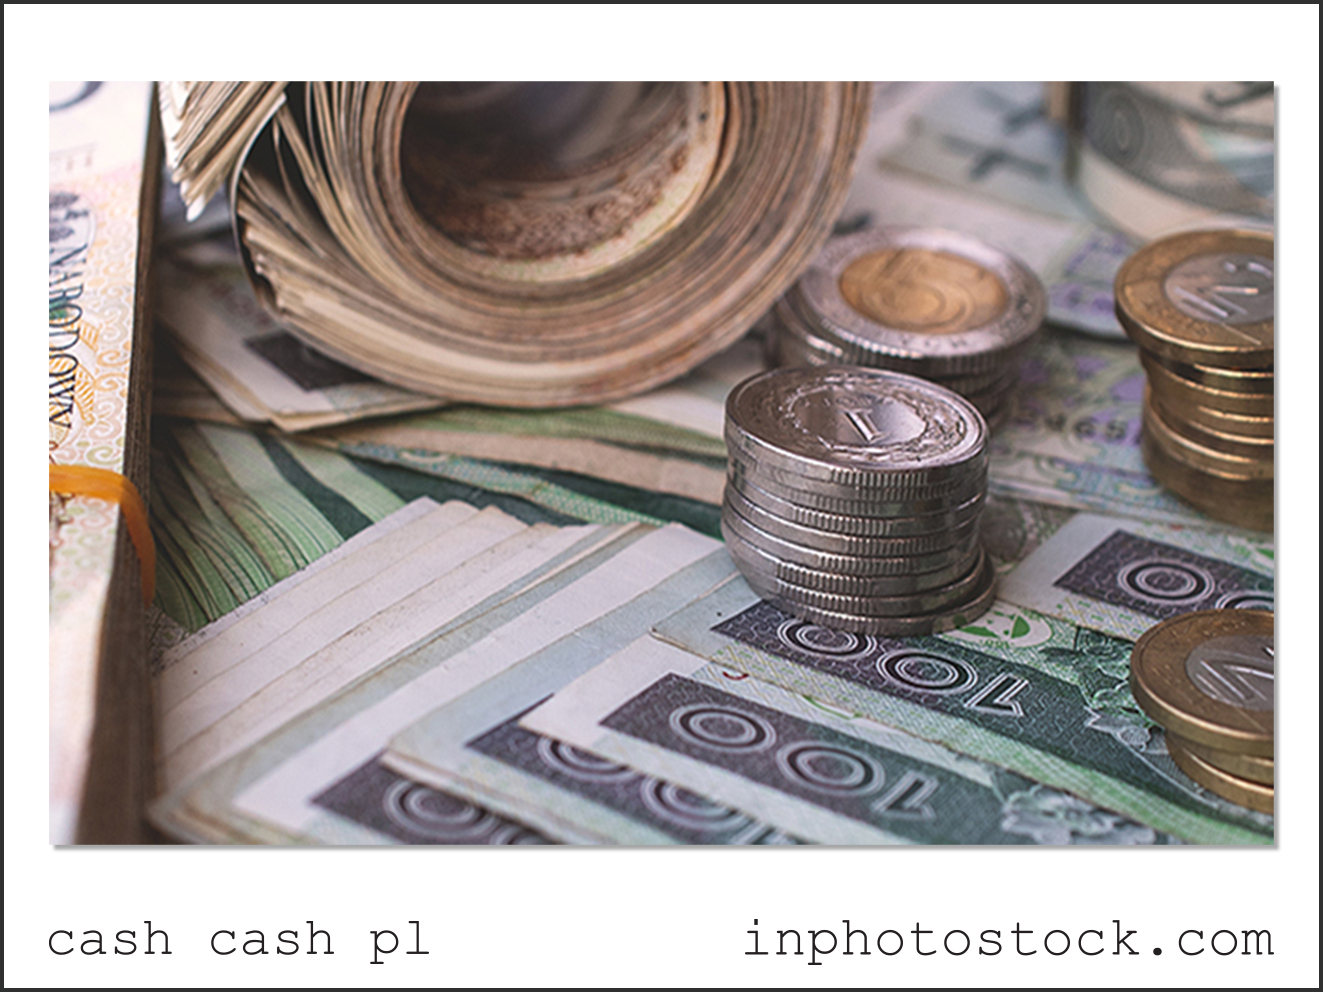 cash cash pl photo bank